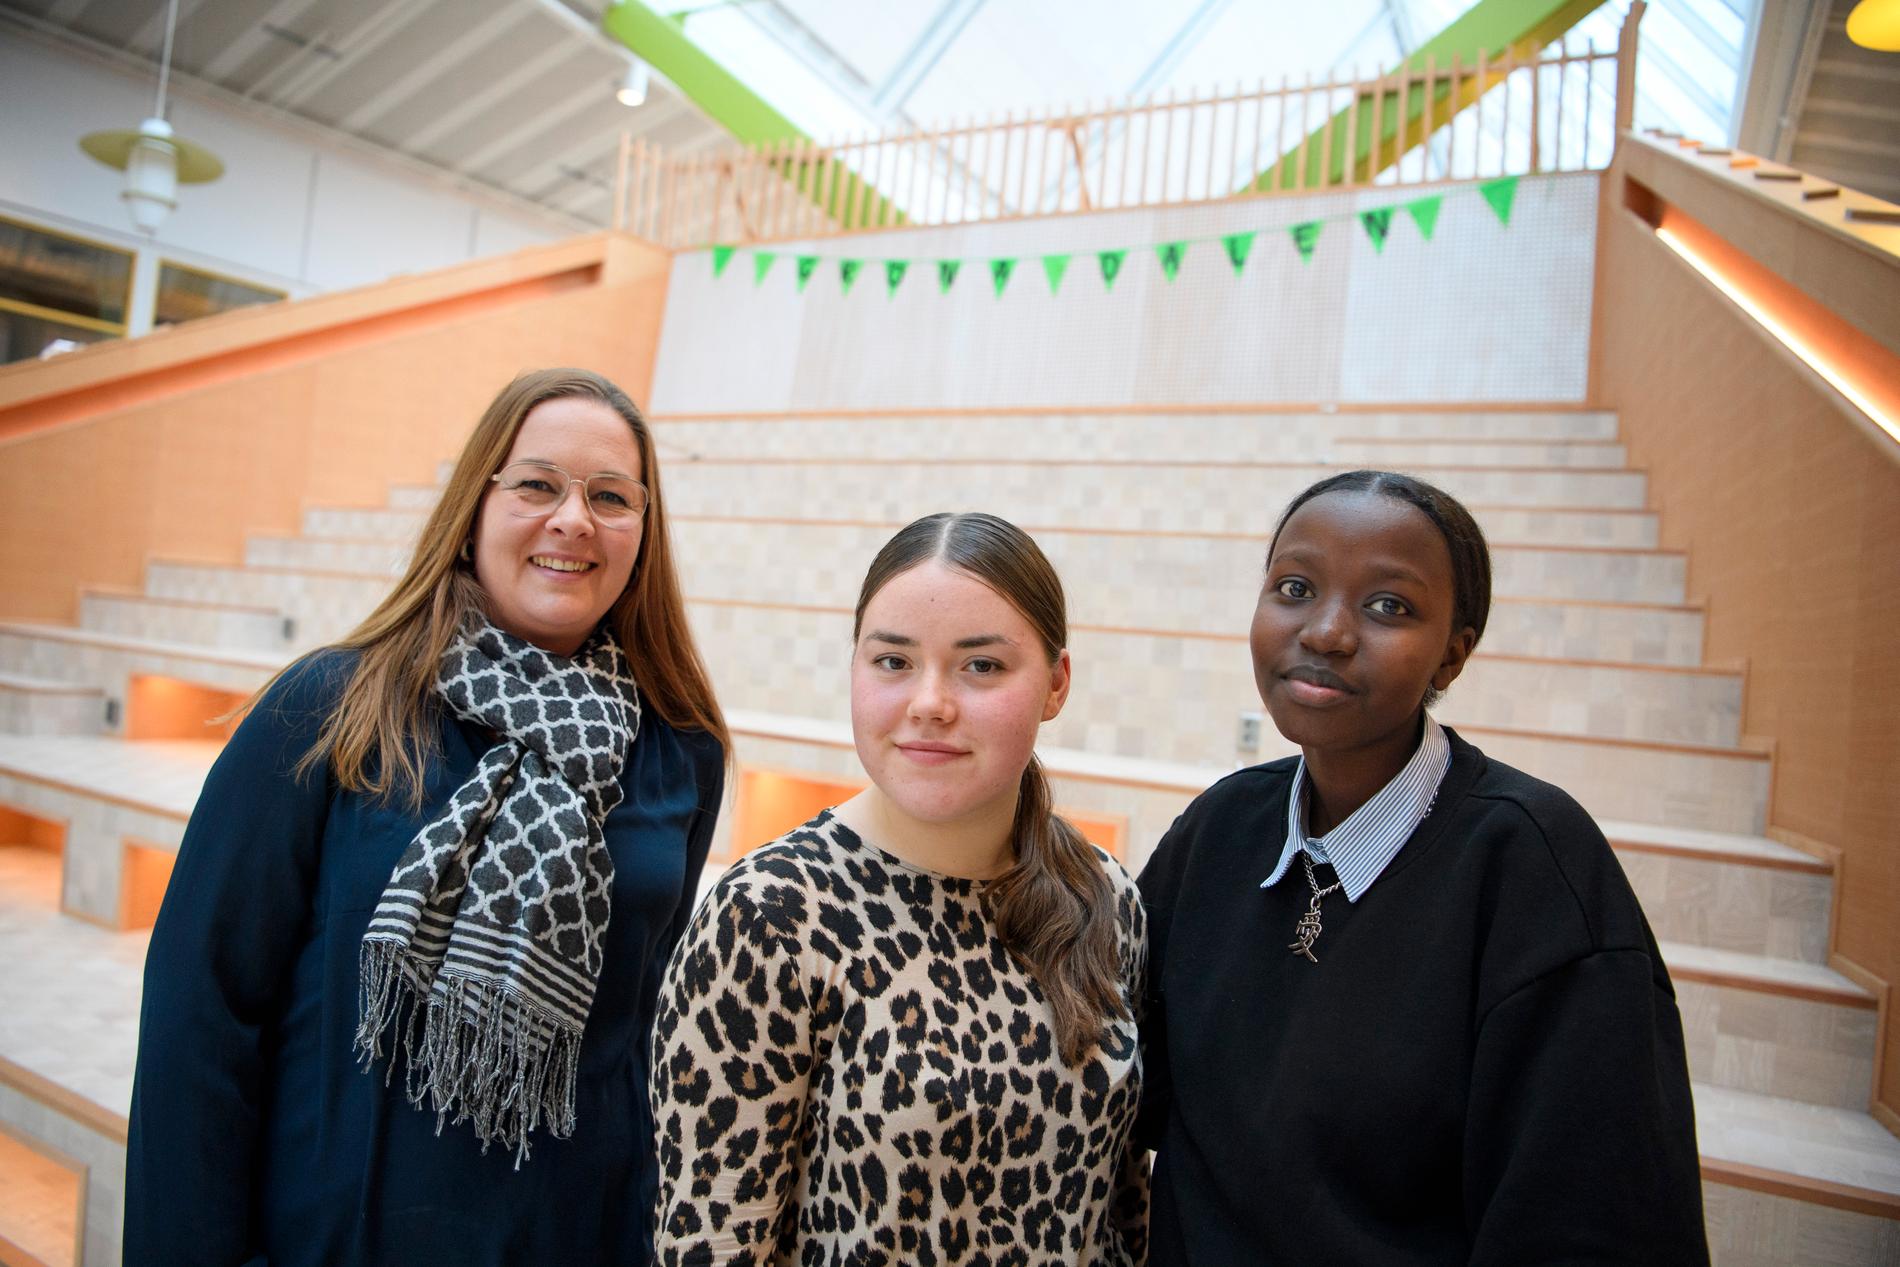 Läraren Annika Sjödahl med eleverna Maria Koroleva och Nyamuhoza Nyahumure på Gröna Dalenskolan i Bålsta. "Jag försöker skapa min undervisning utifrån vad eleverna själva tycker är intressant", säger Annika Sjödahl.